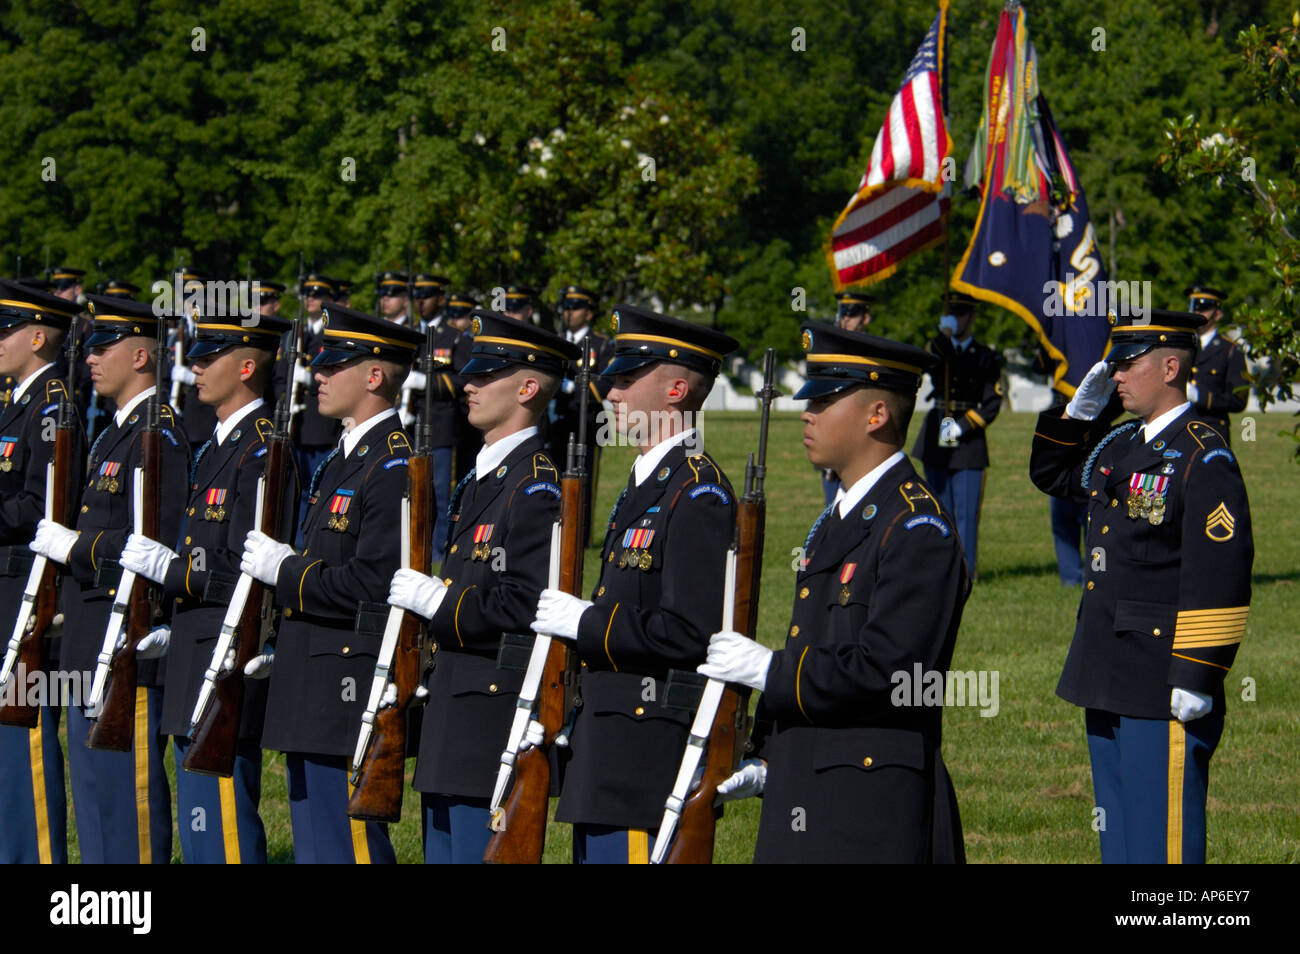 El Cementerio Nacional de Arlington, Arlington, Virginia, los funerales con honores militares Foto de stock